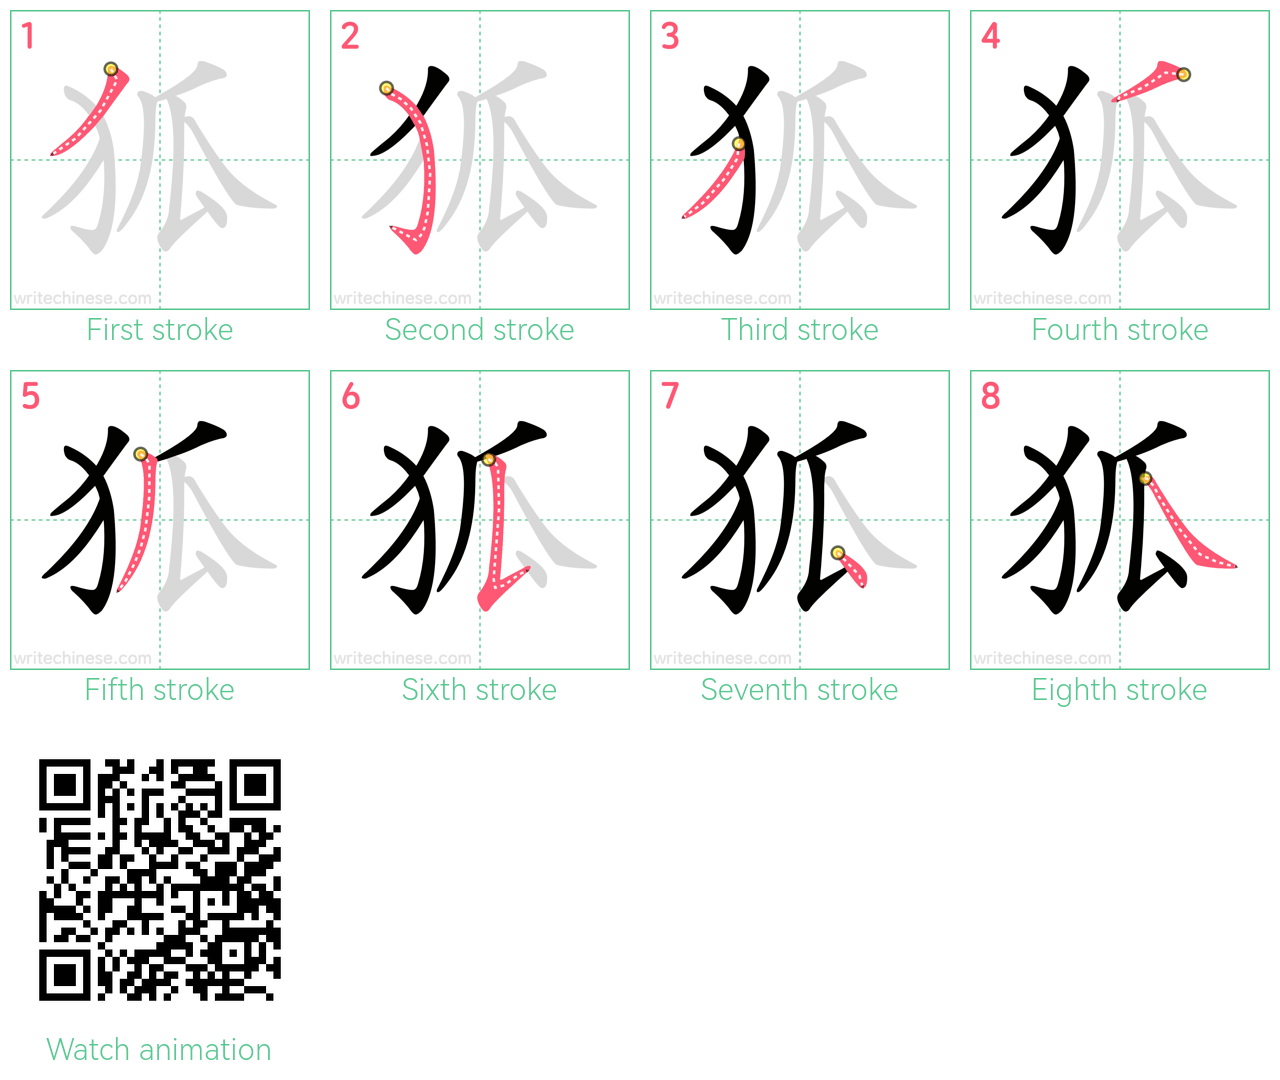 狐 step-by-step stroke order diagrams